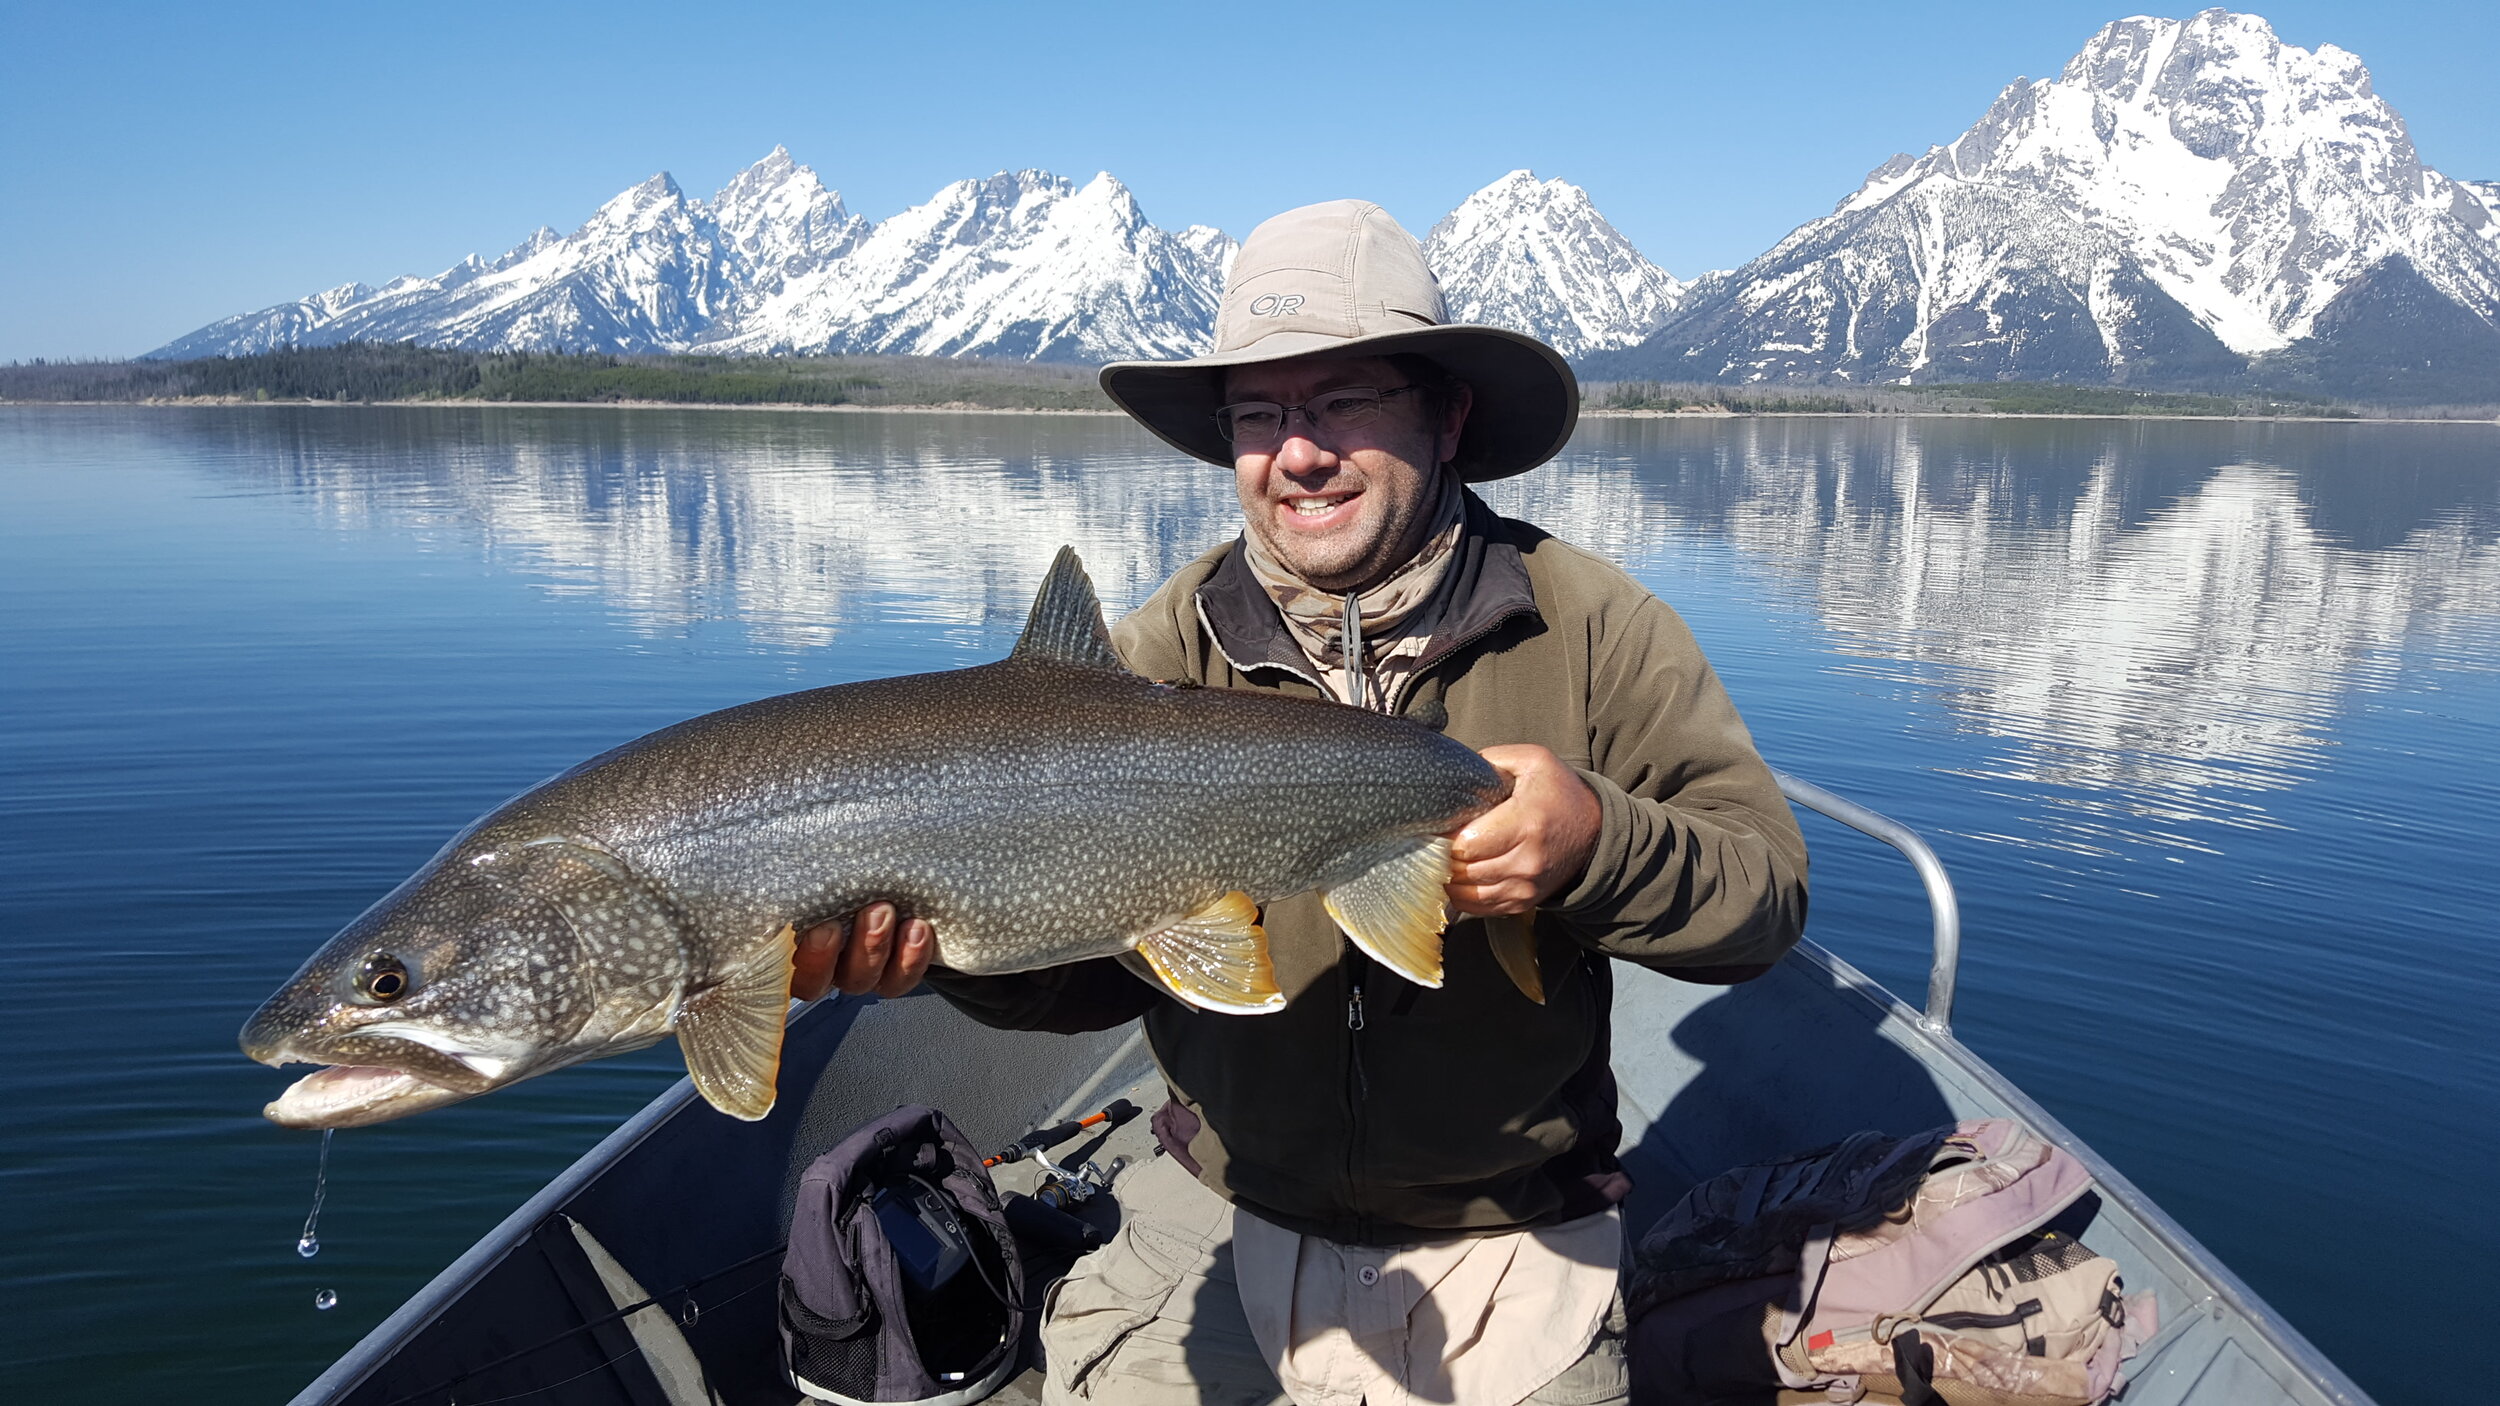  A 20 lb lake trout from Jackson Lake. 